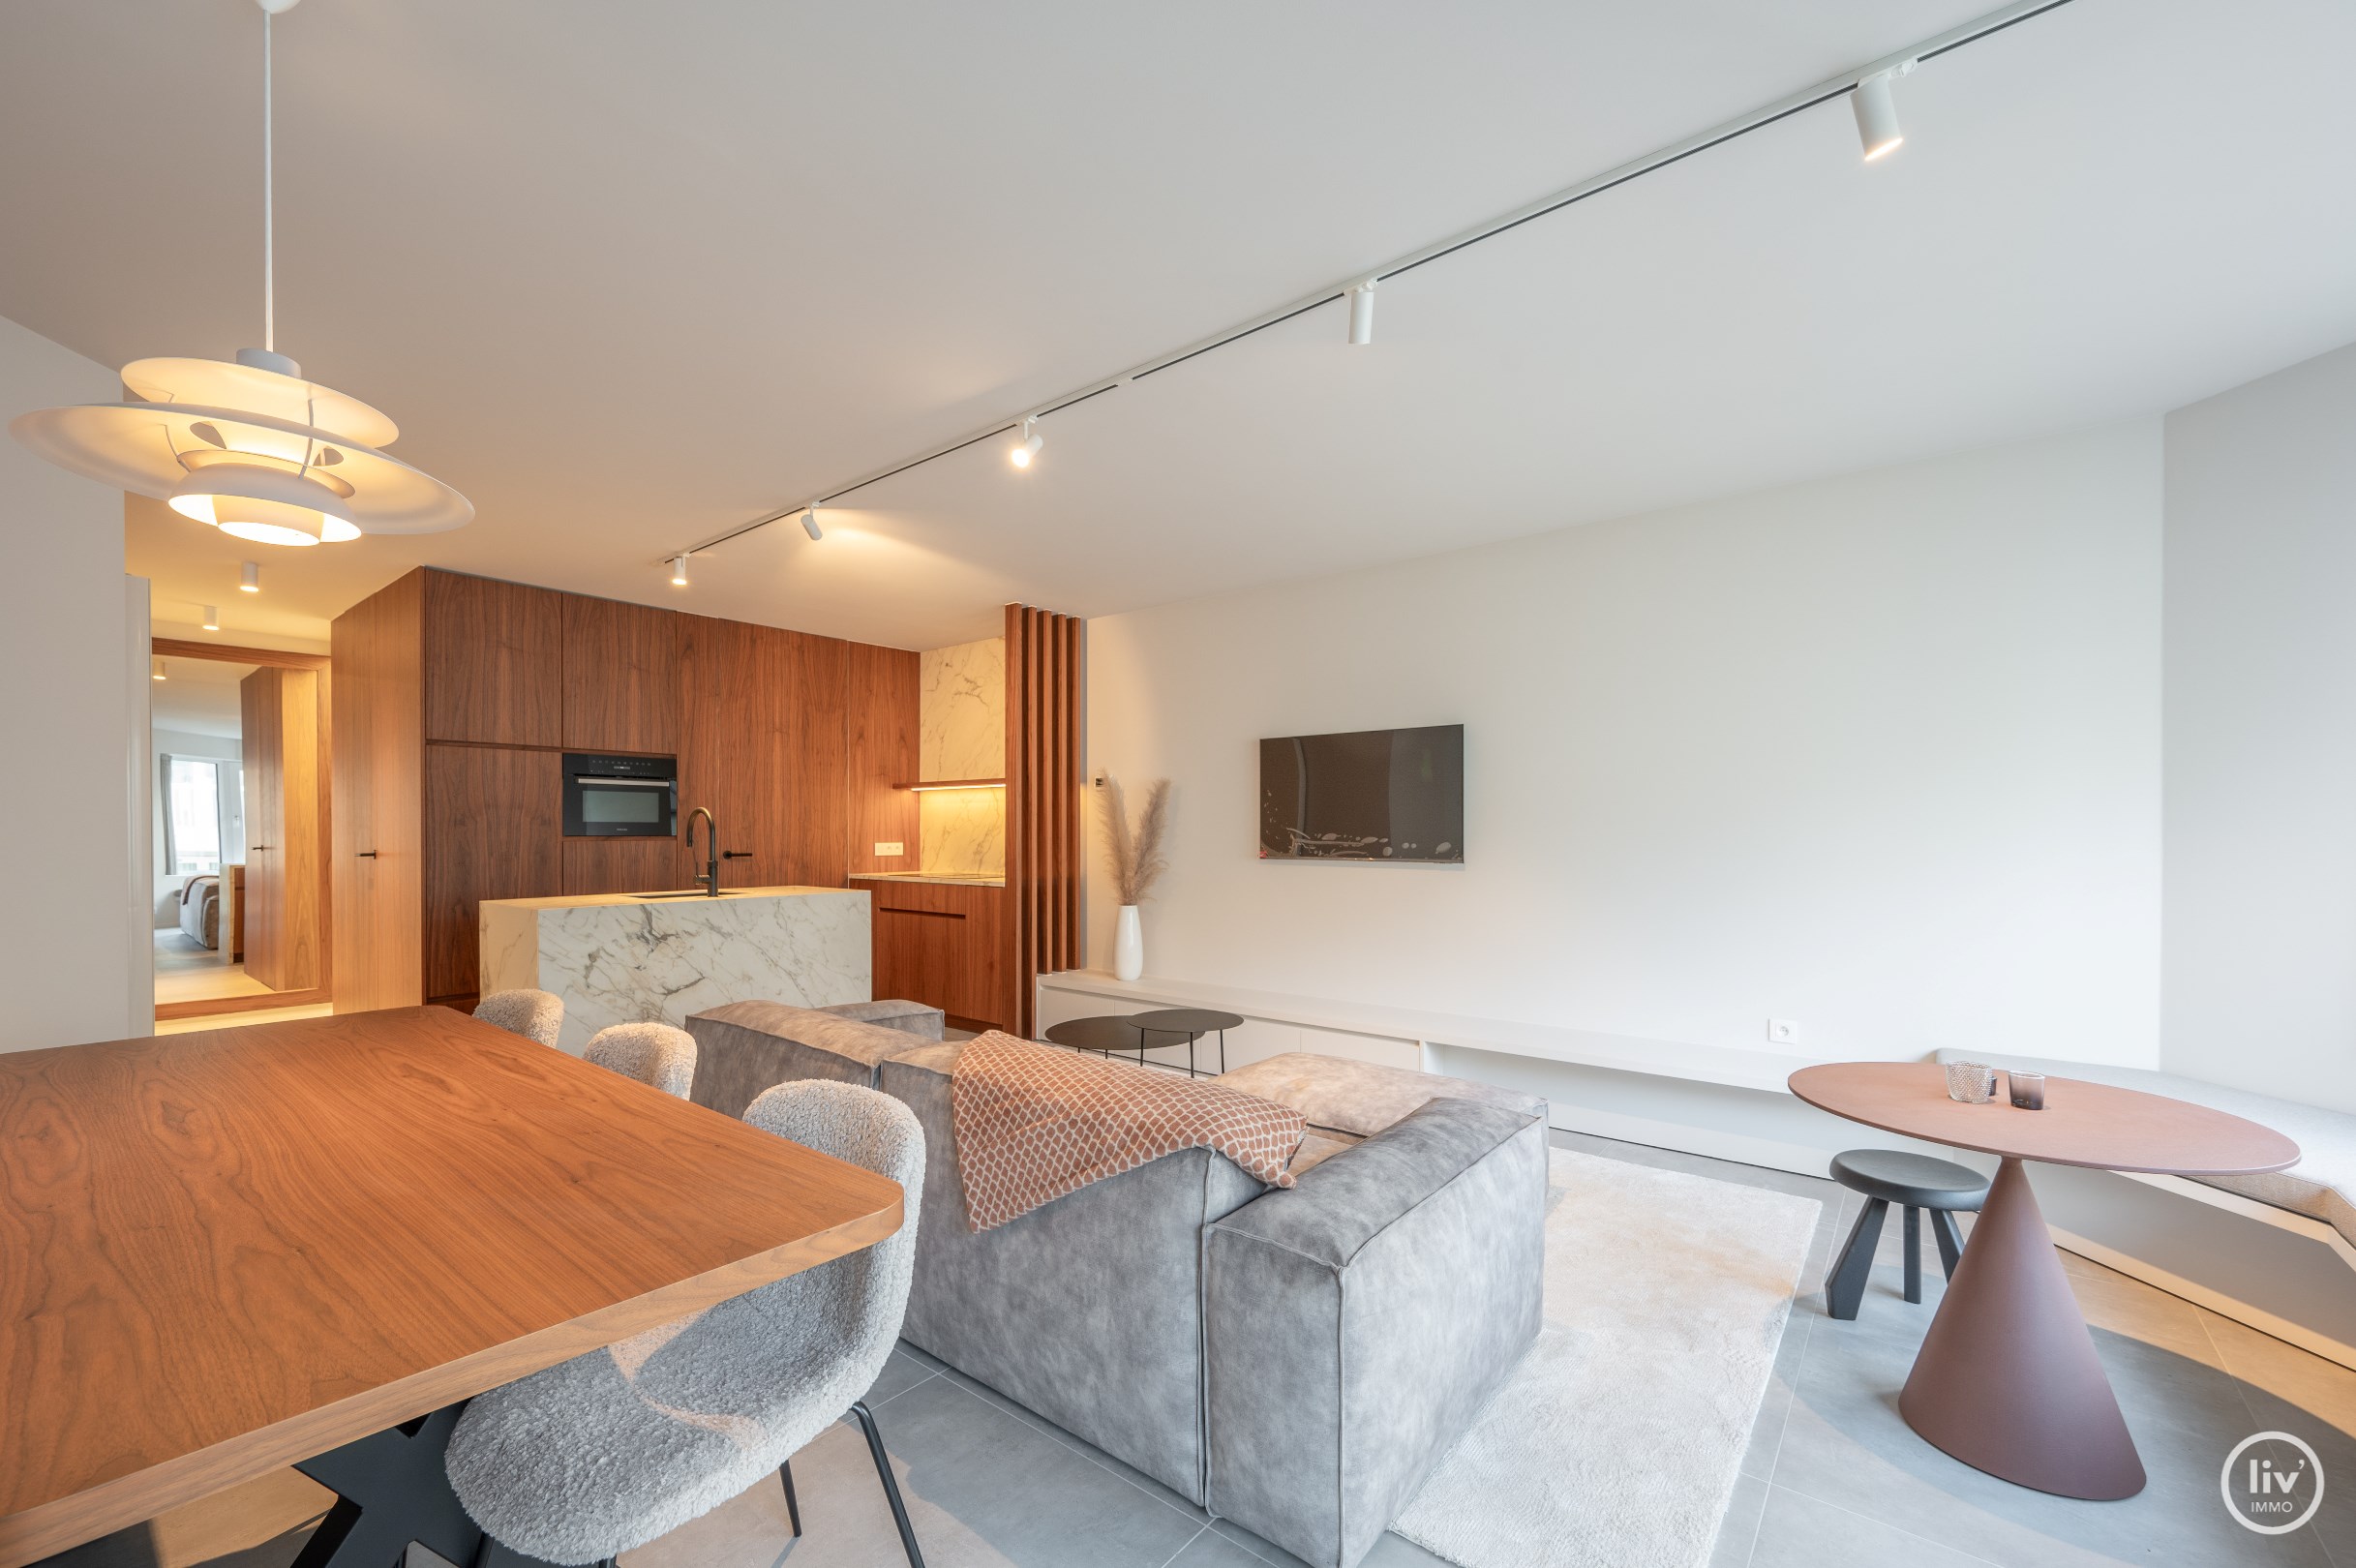 Mooi gerenoveerd appartement met zijdelings zeezicht gelegen vlakbij het Driehoeksplein en de zeedijk te Knokke. 